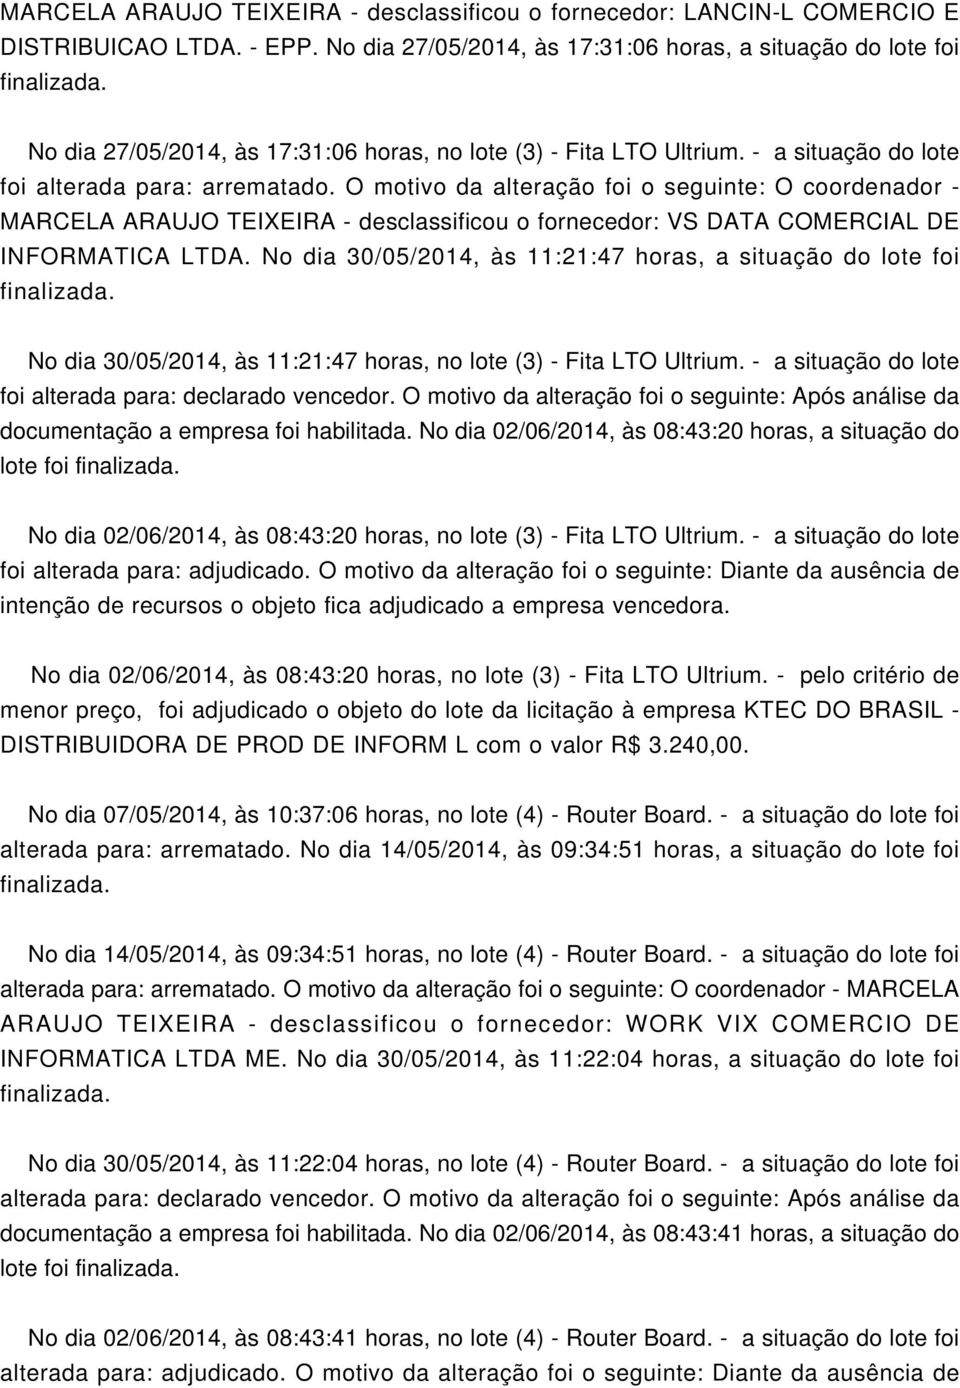 O motivo da alteração foi o seguinte: O coordenador - MARCELA ARAUJO TEIXEIRA - desclassificou o fornecedor: VS DATA CORCIAL DE INFORMATICA.